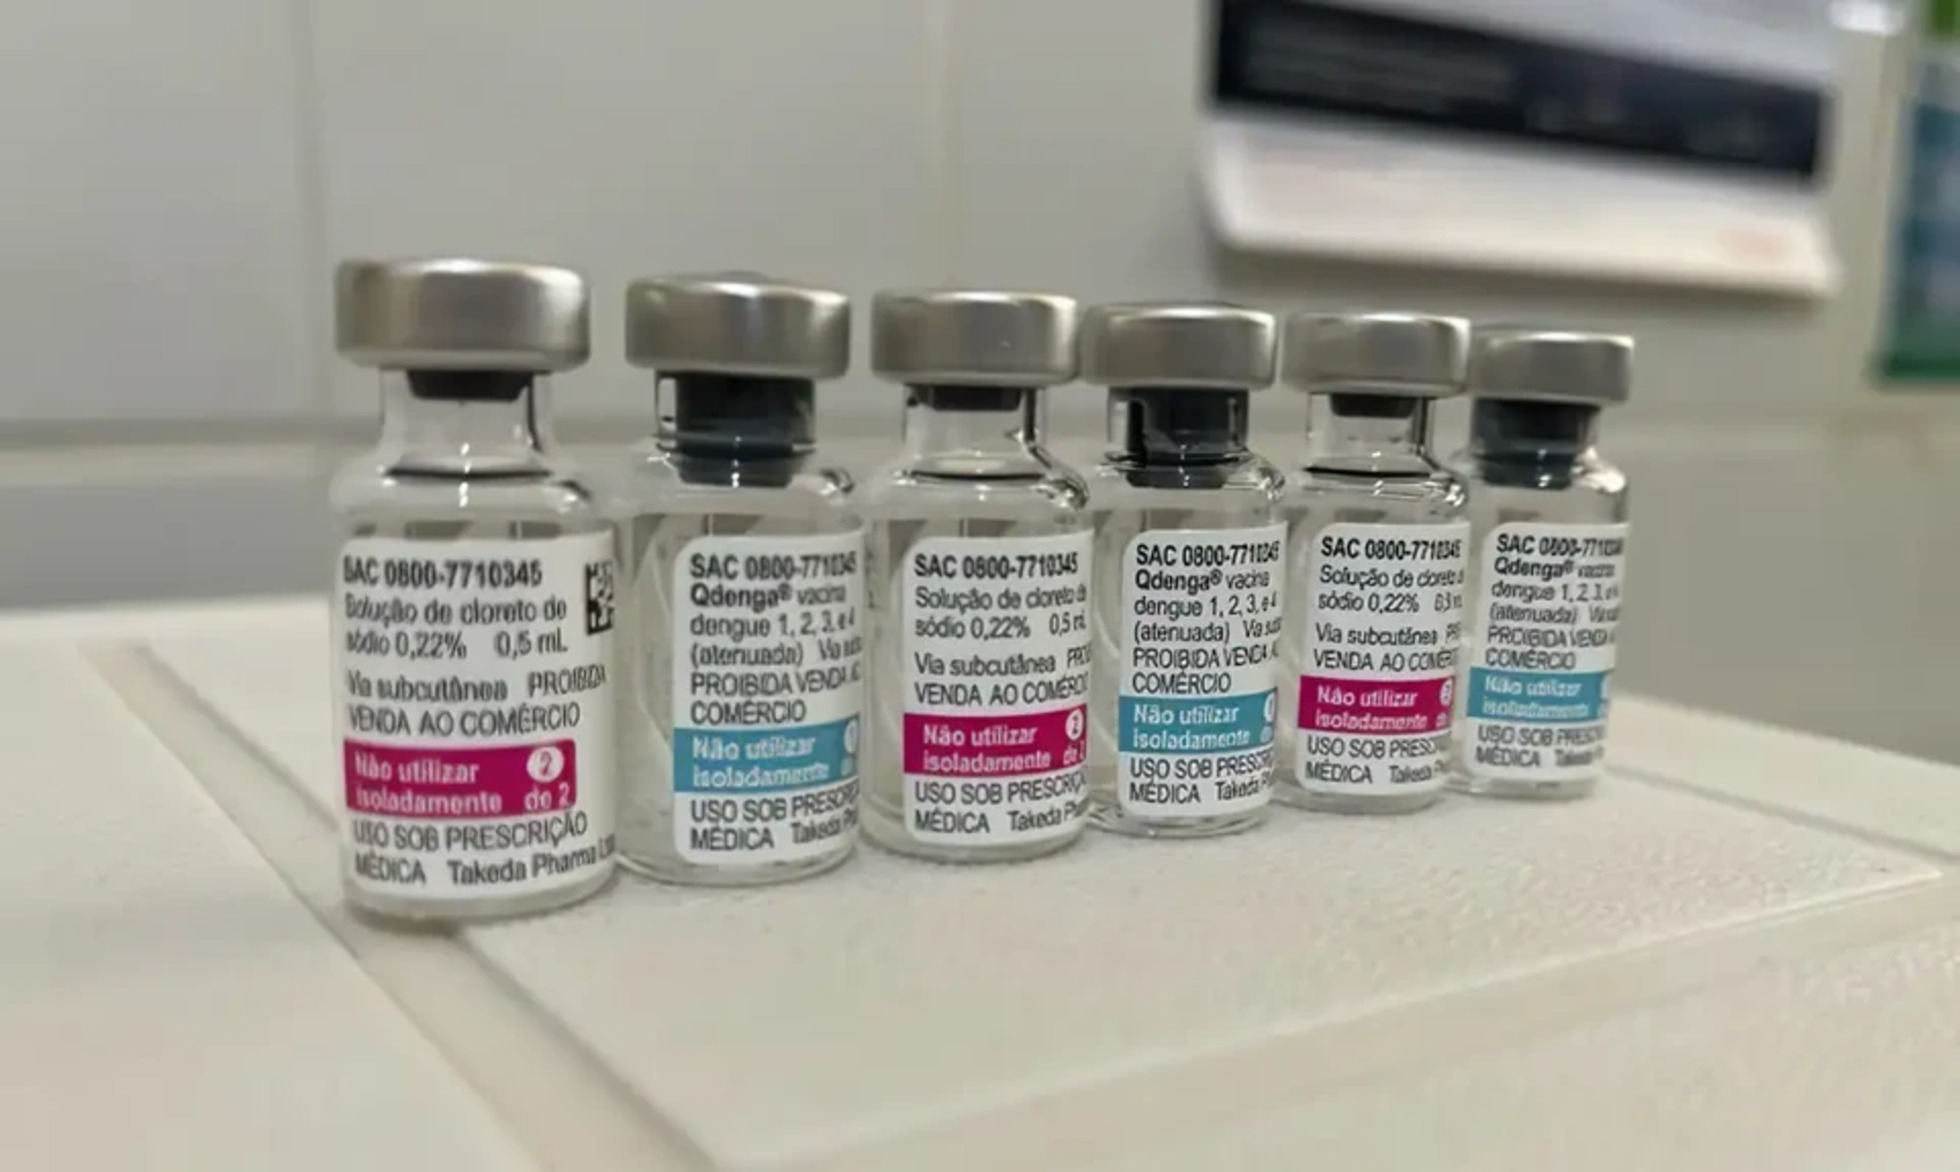 Doses da vacina de dengue que não foram usadas serão redistribuídas